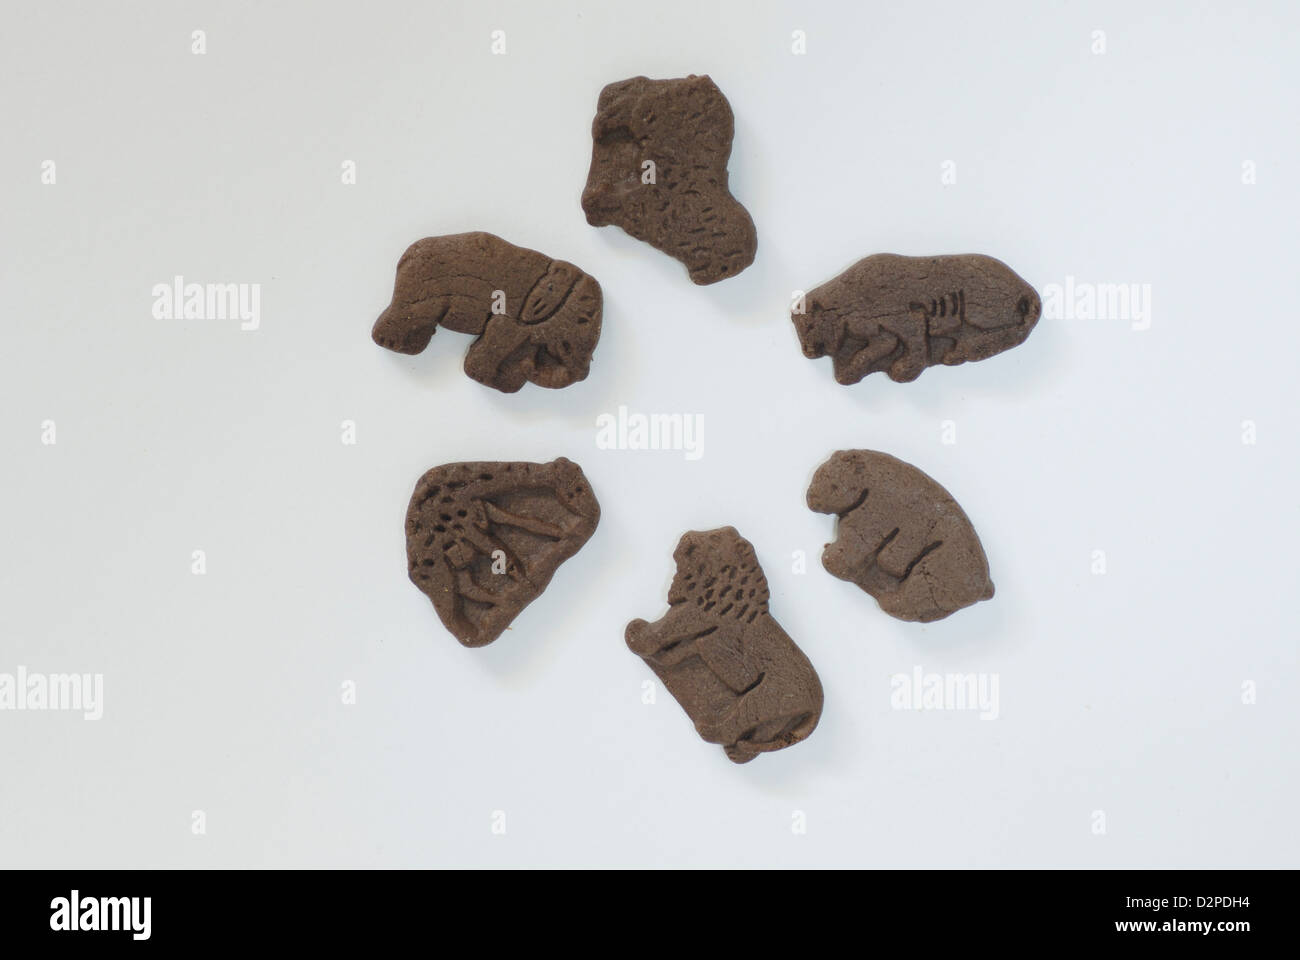 Al cioccolato a forma di animale i cookie su sfondo bianco con ombre, elefante, agnello, cougar, orso, lion, forme giraffe Foto Stock